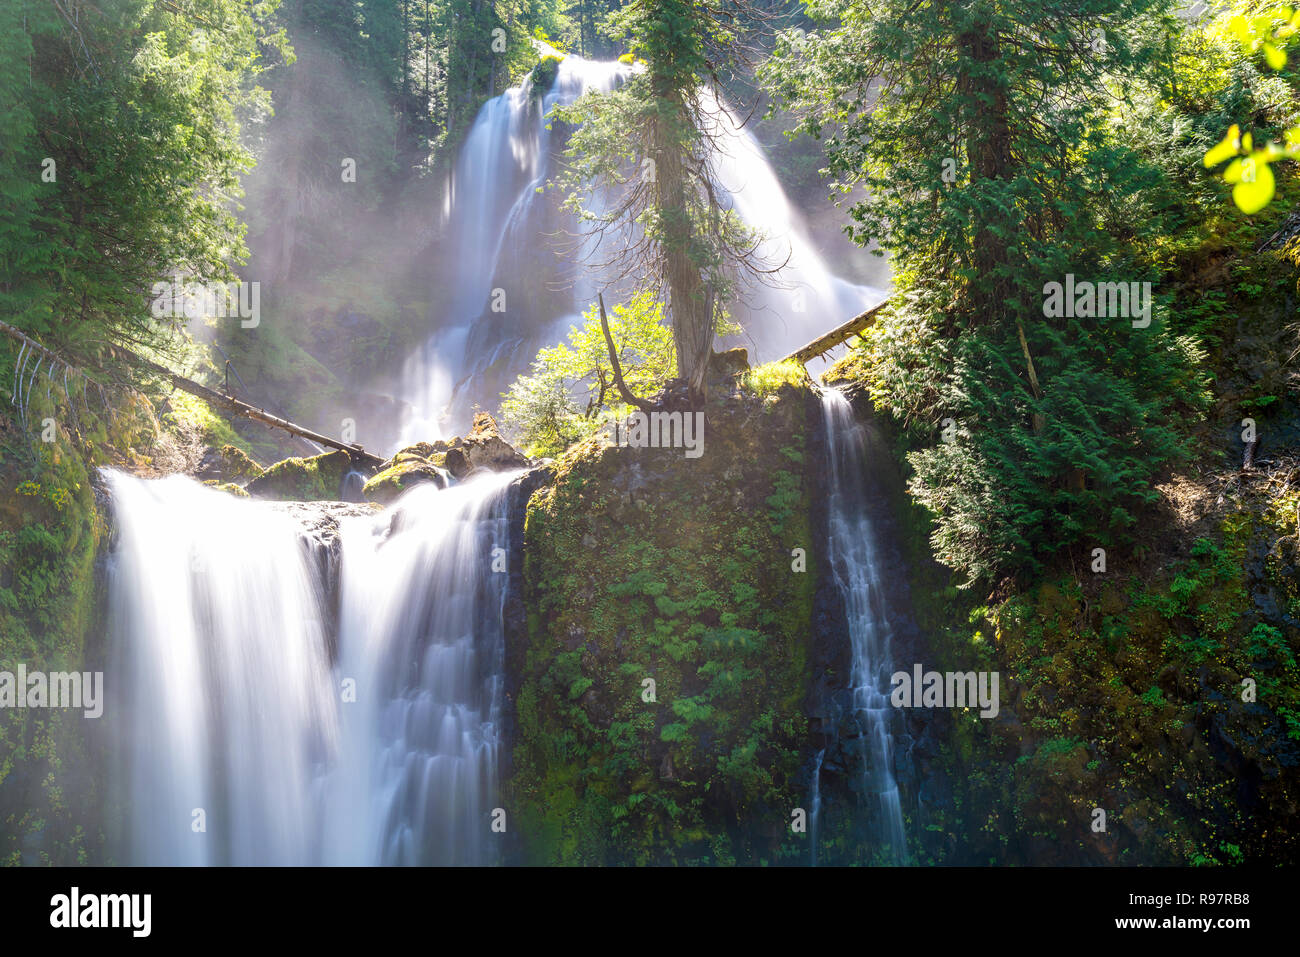 Sonnenstrahlen glänzen auf mehrstufigen Wasserfall - Natur, Falls Creek Falls, Washington, im pazifischen Nordwesten. Stockfoto